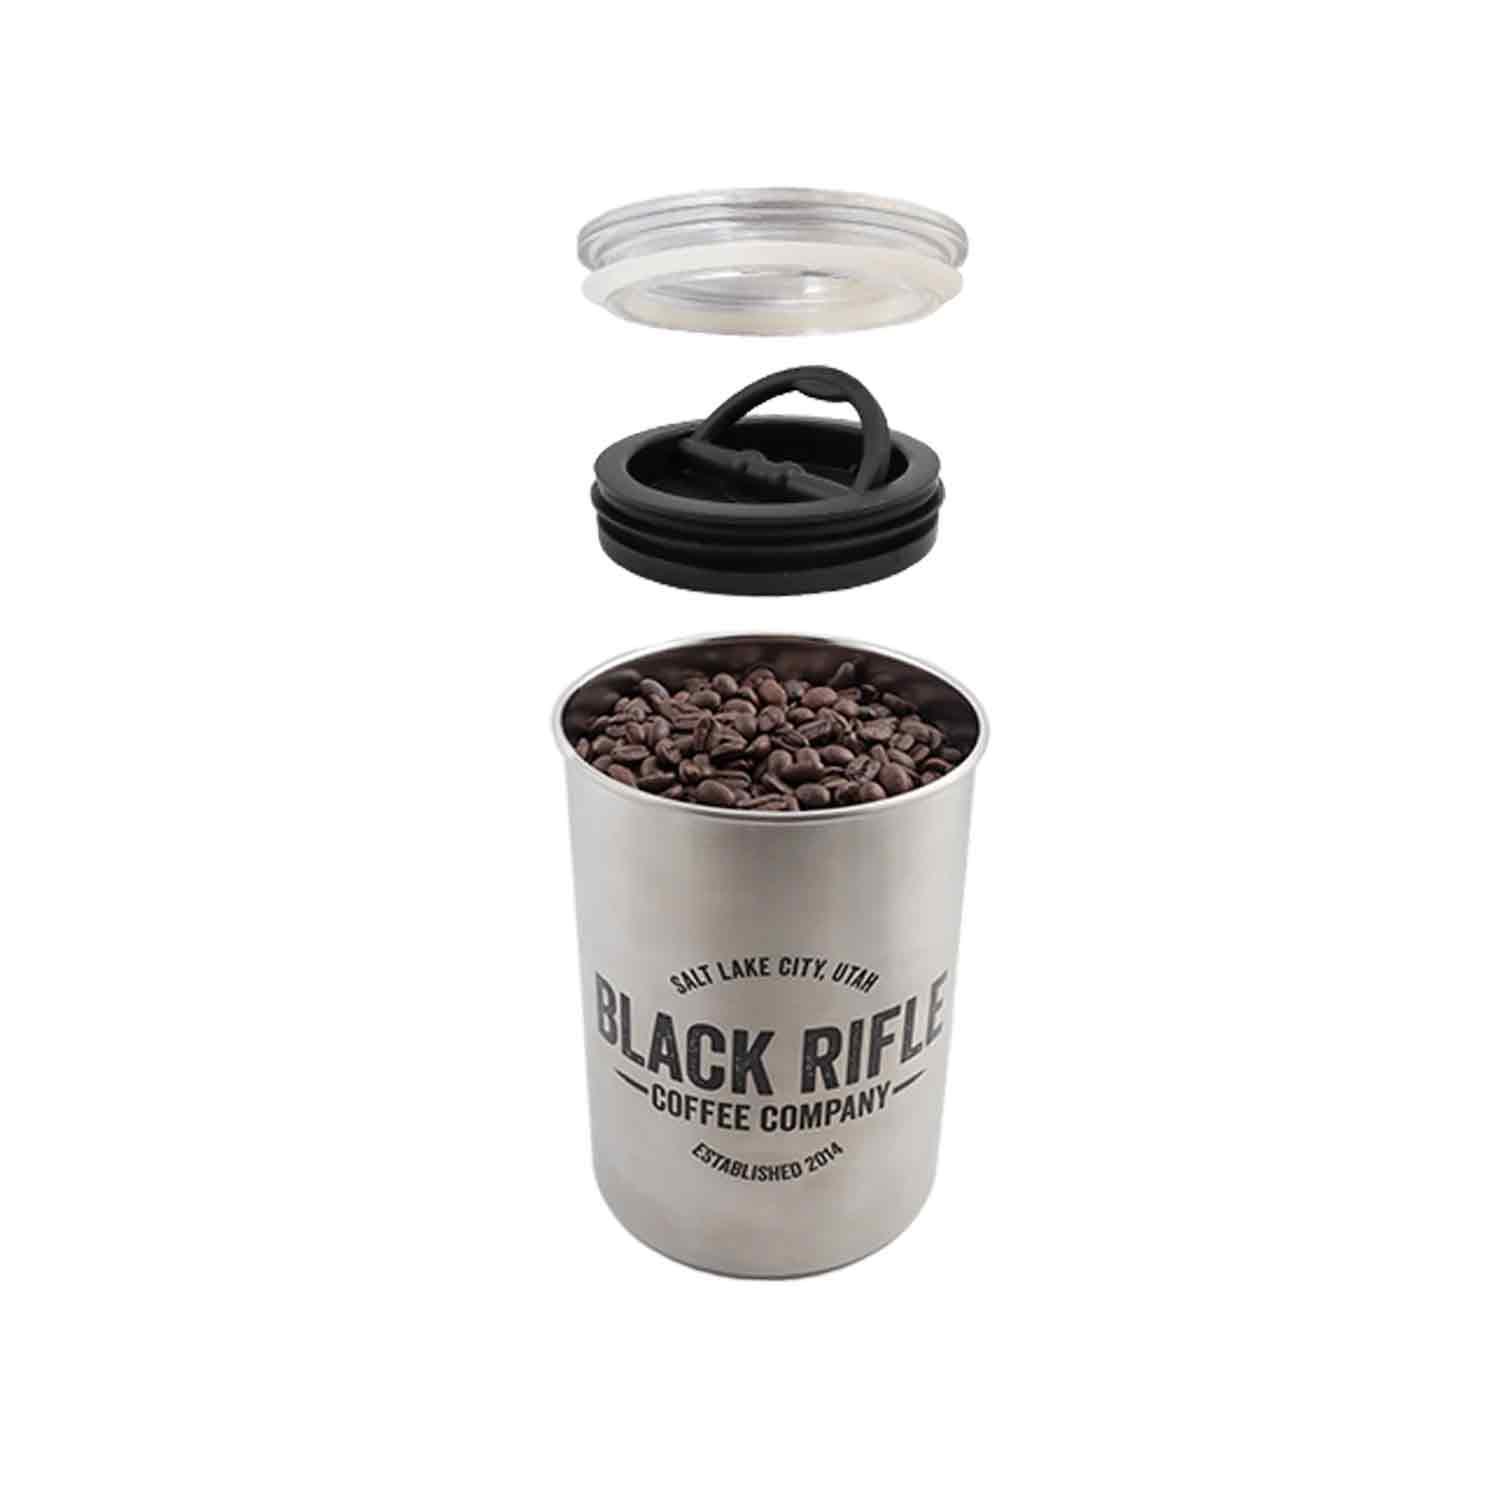 Black Rifle Coffee Company Coffee Can